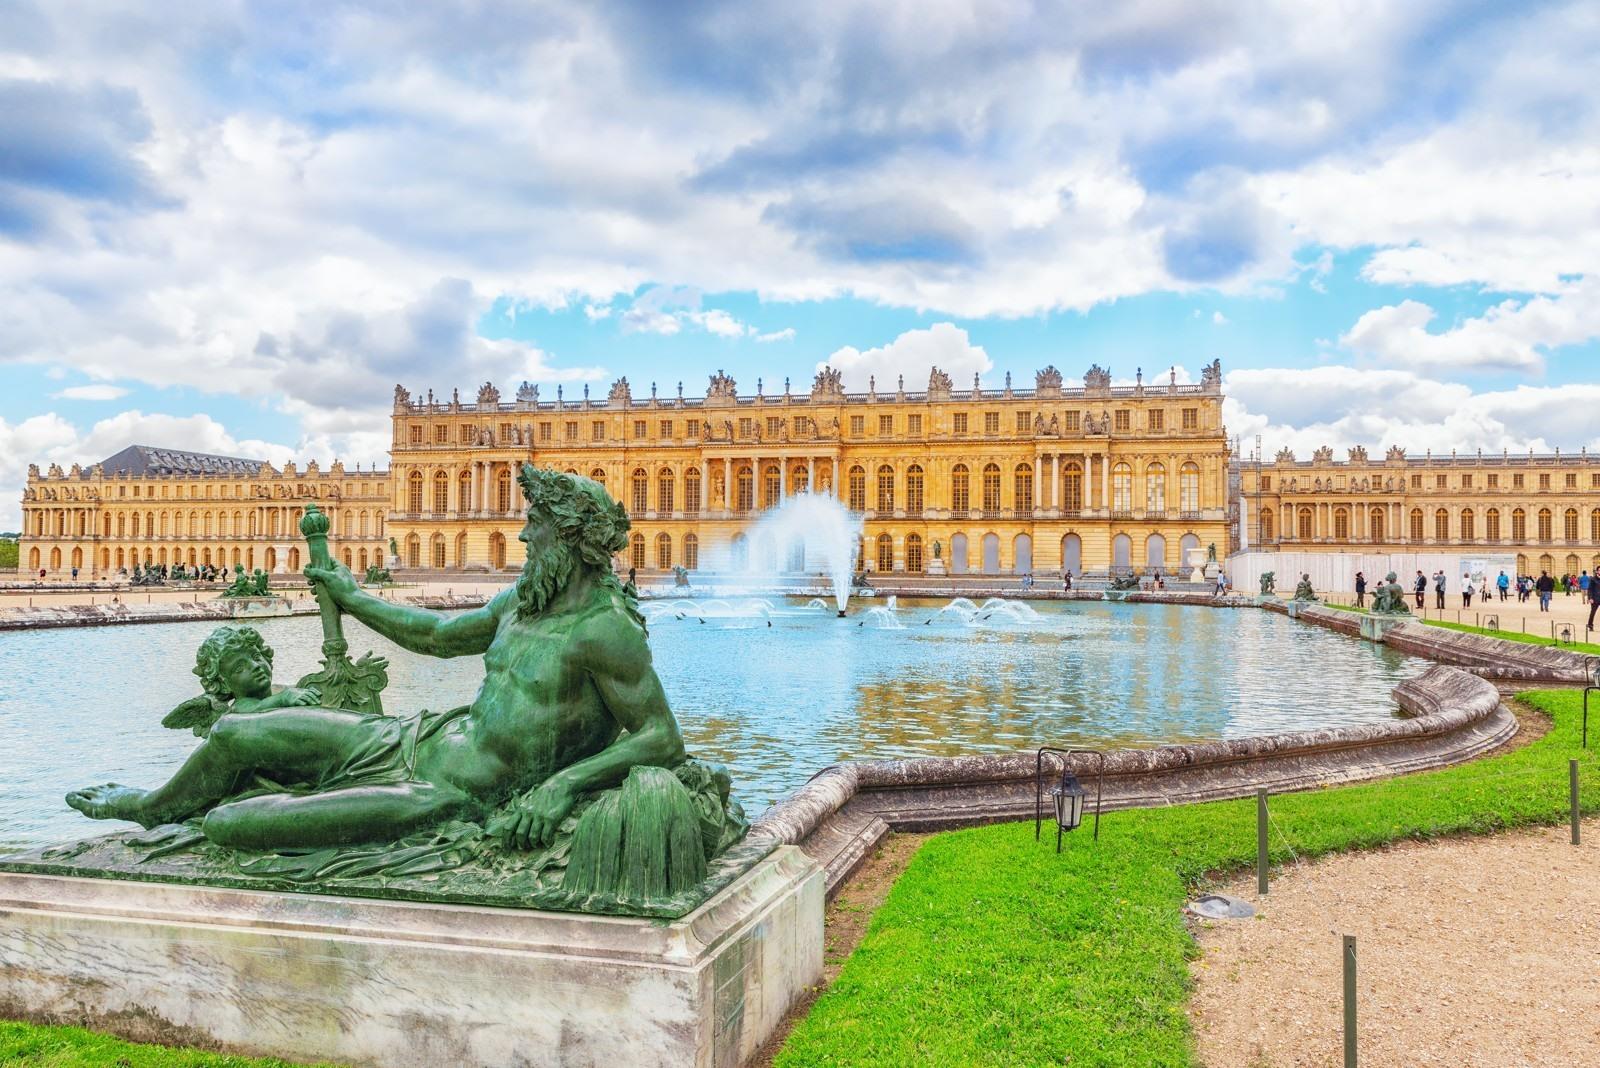 dubbellaag ervaring Alternatief voorstel Kasteel van Versailles bezoeken? Tips, info + wachtrijen vermijden?